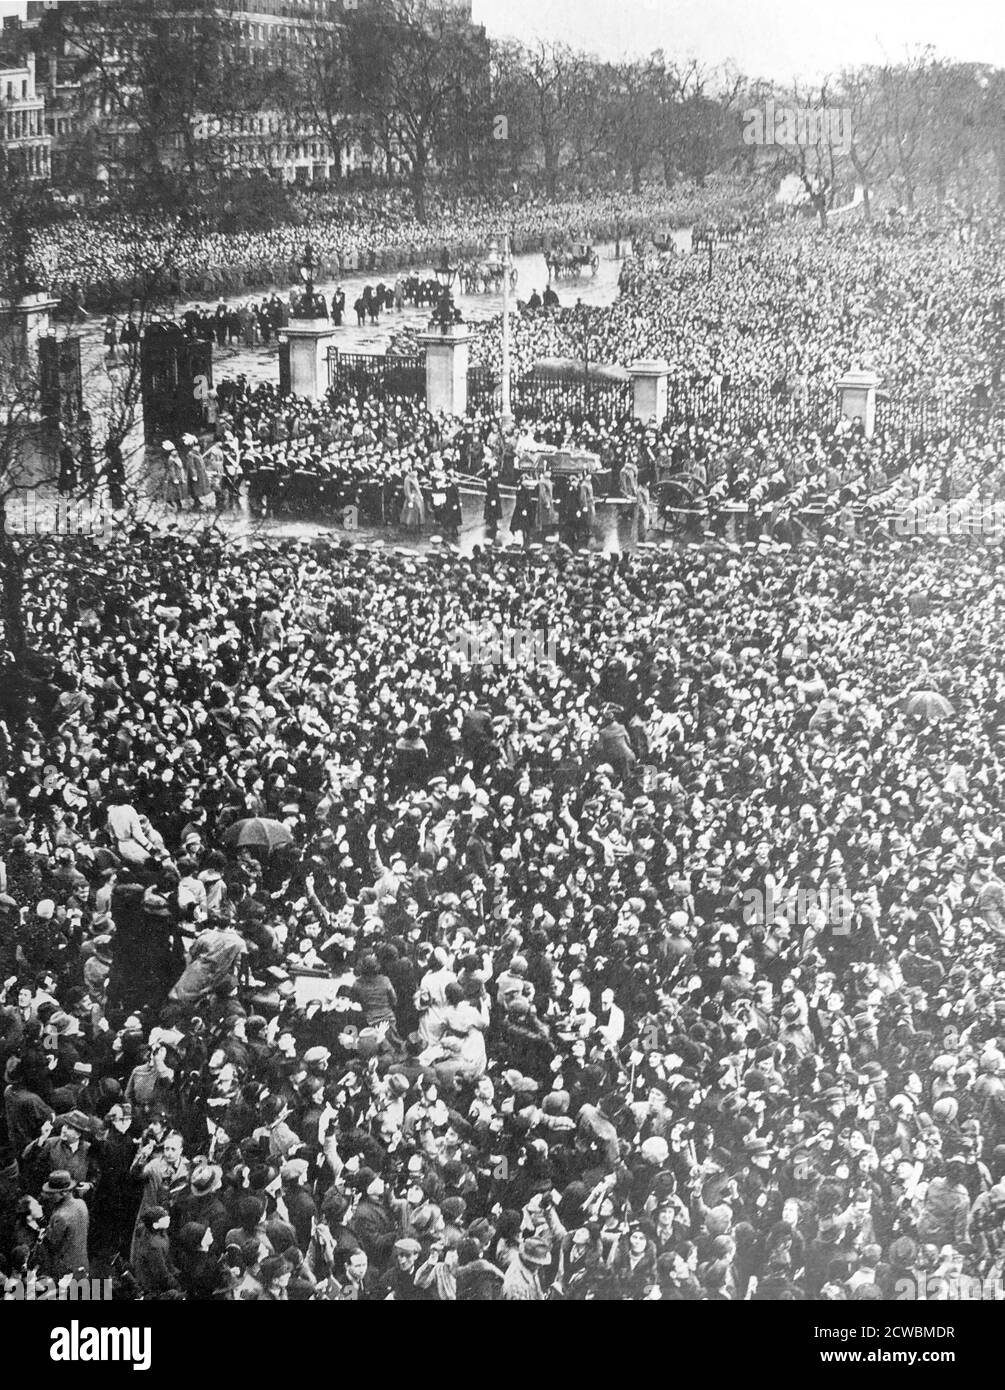 Photographie en noir et blanc des funérailles du roi George V du Royaume-Uni (1865-1936); des milliers de personnes bordent les rues de Londres pour voir la procession. Banque D'Images